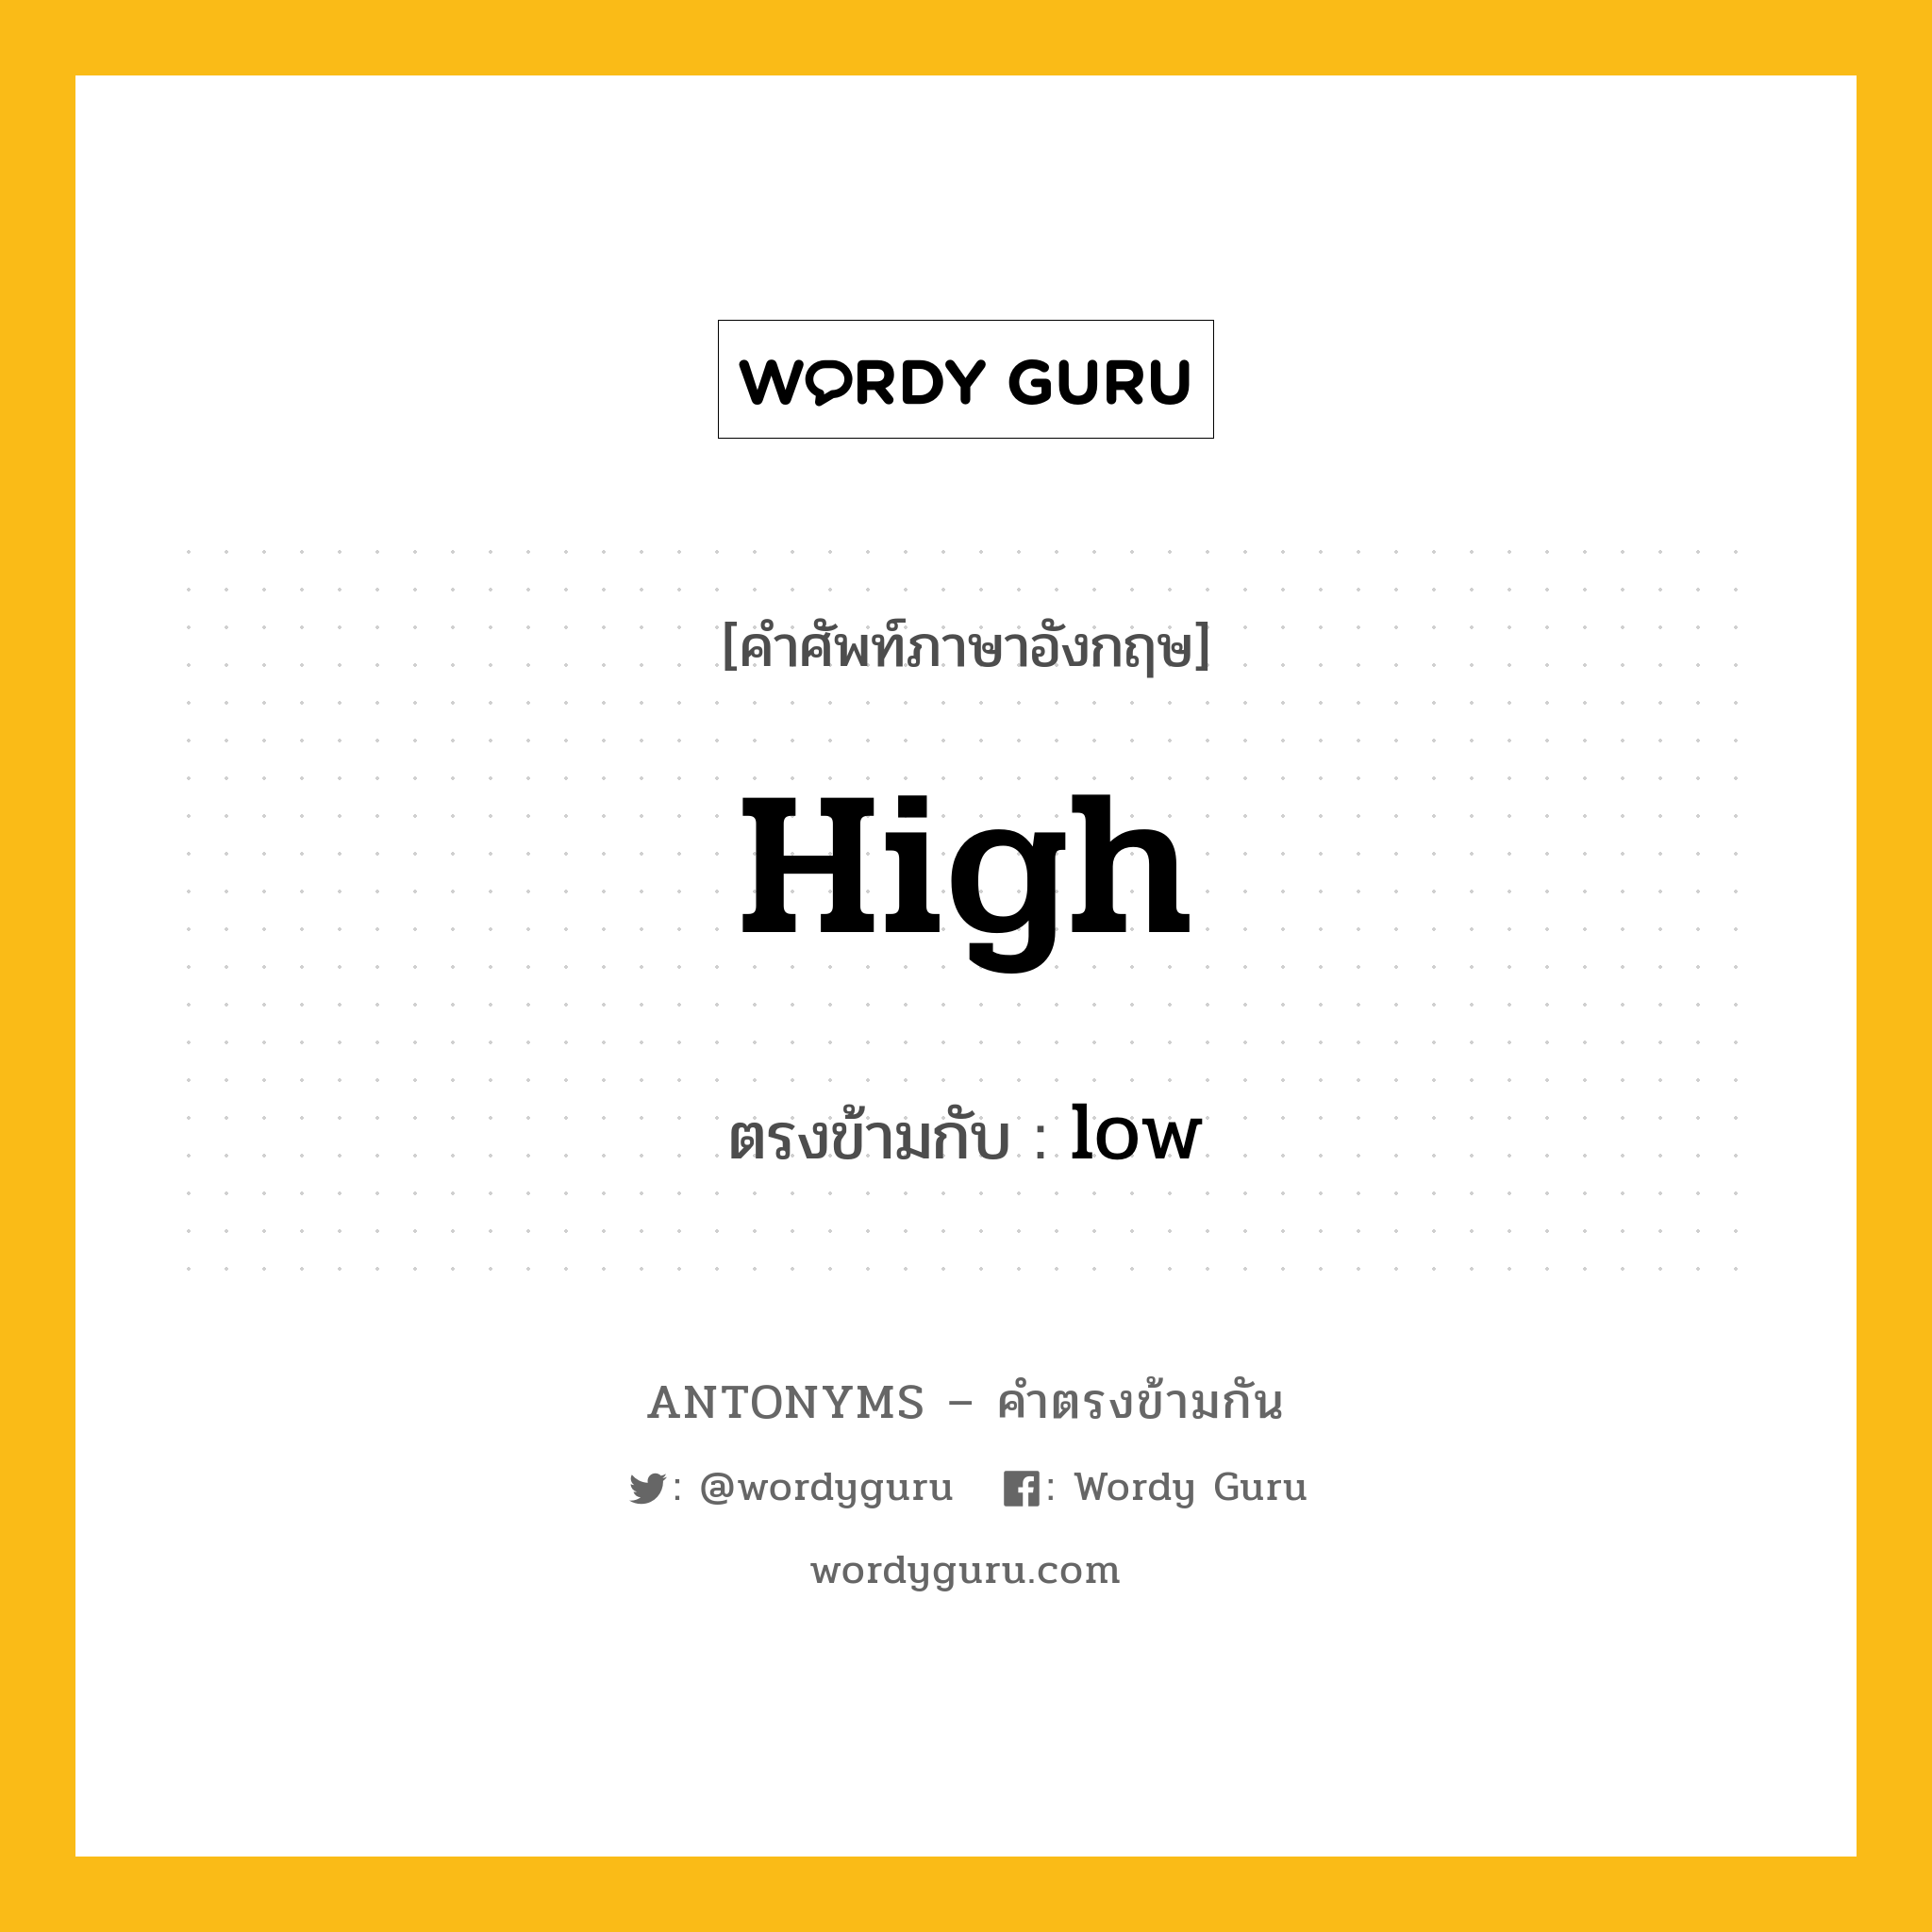 high เป็นคำตรงข้ามกับคำไหนบ้าง?, คำศัพท์ภาษาอังกฤษ high ตรงข้ามกับ low หมวด low